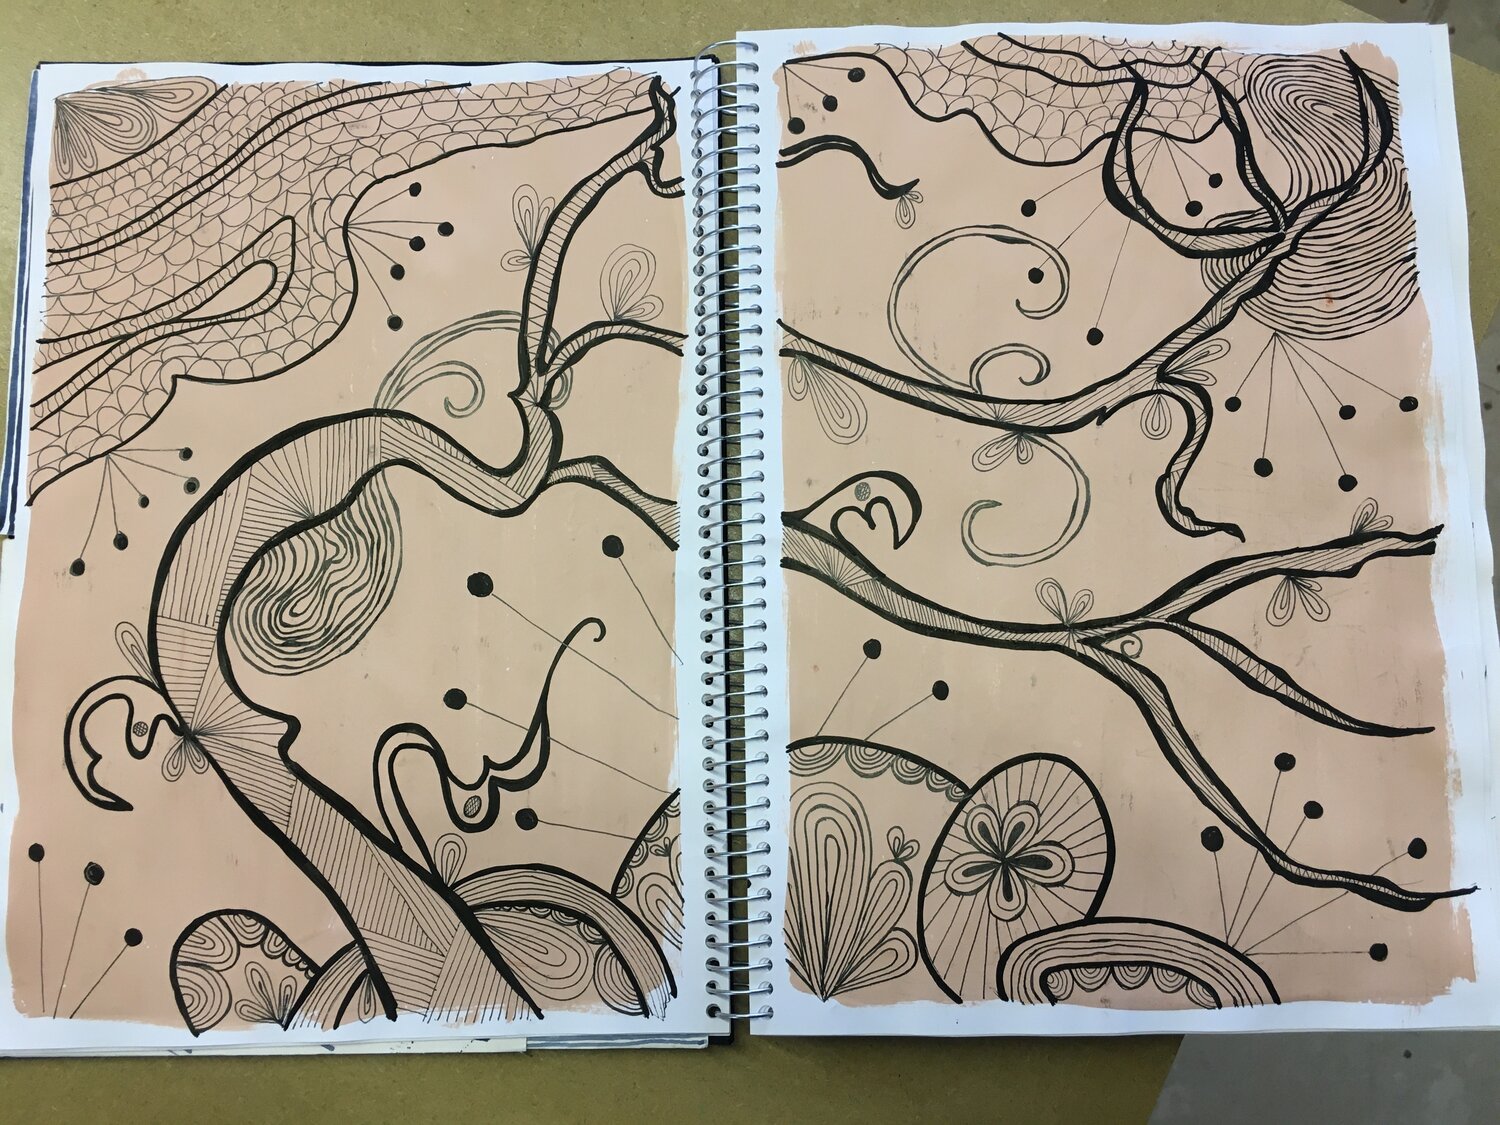 Progression, Patterns and Planning Blog 2 Sept 21 Sketchbook 1.jpg